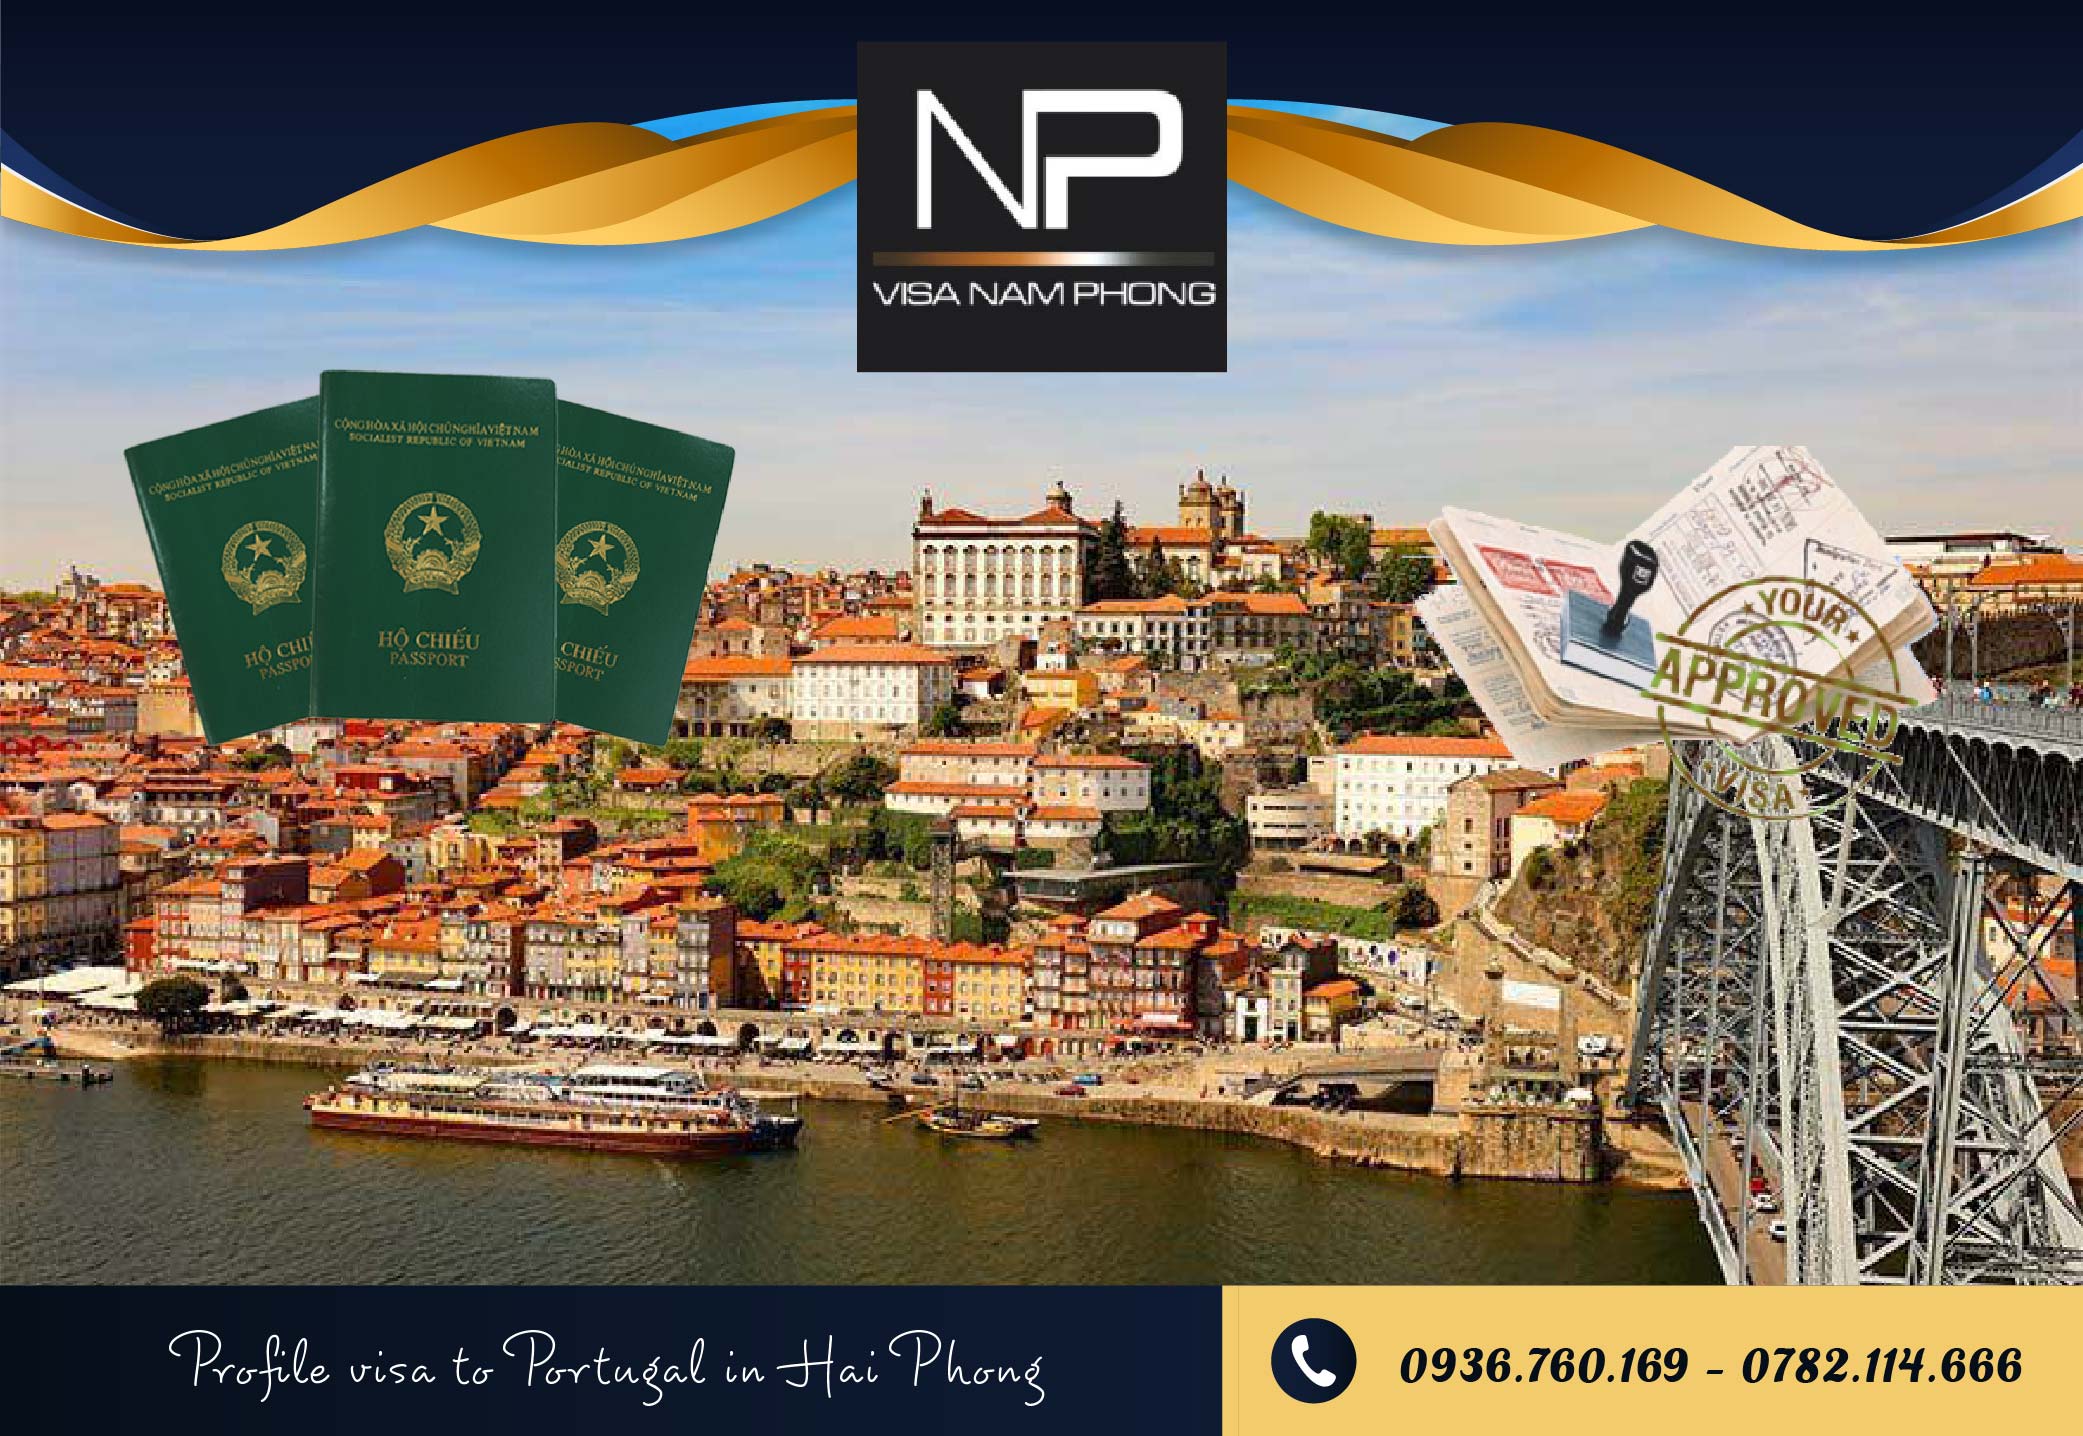 Profile visa to Portugal in Hai Phong